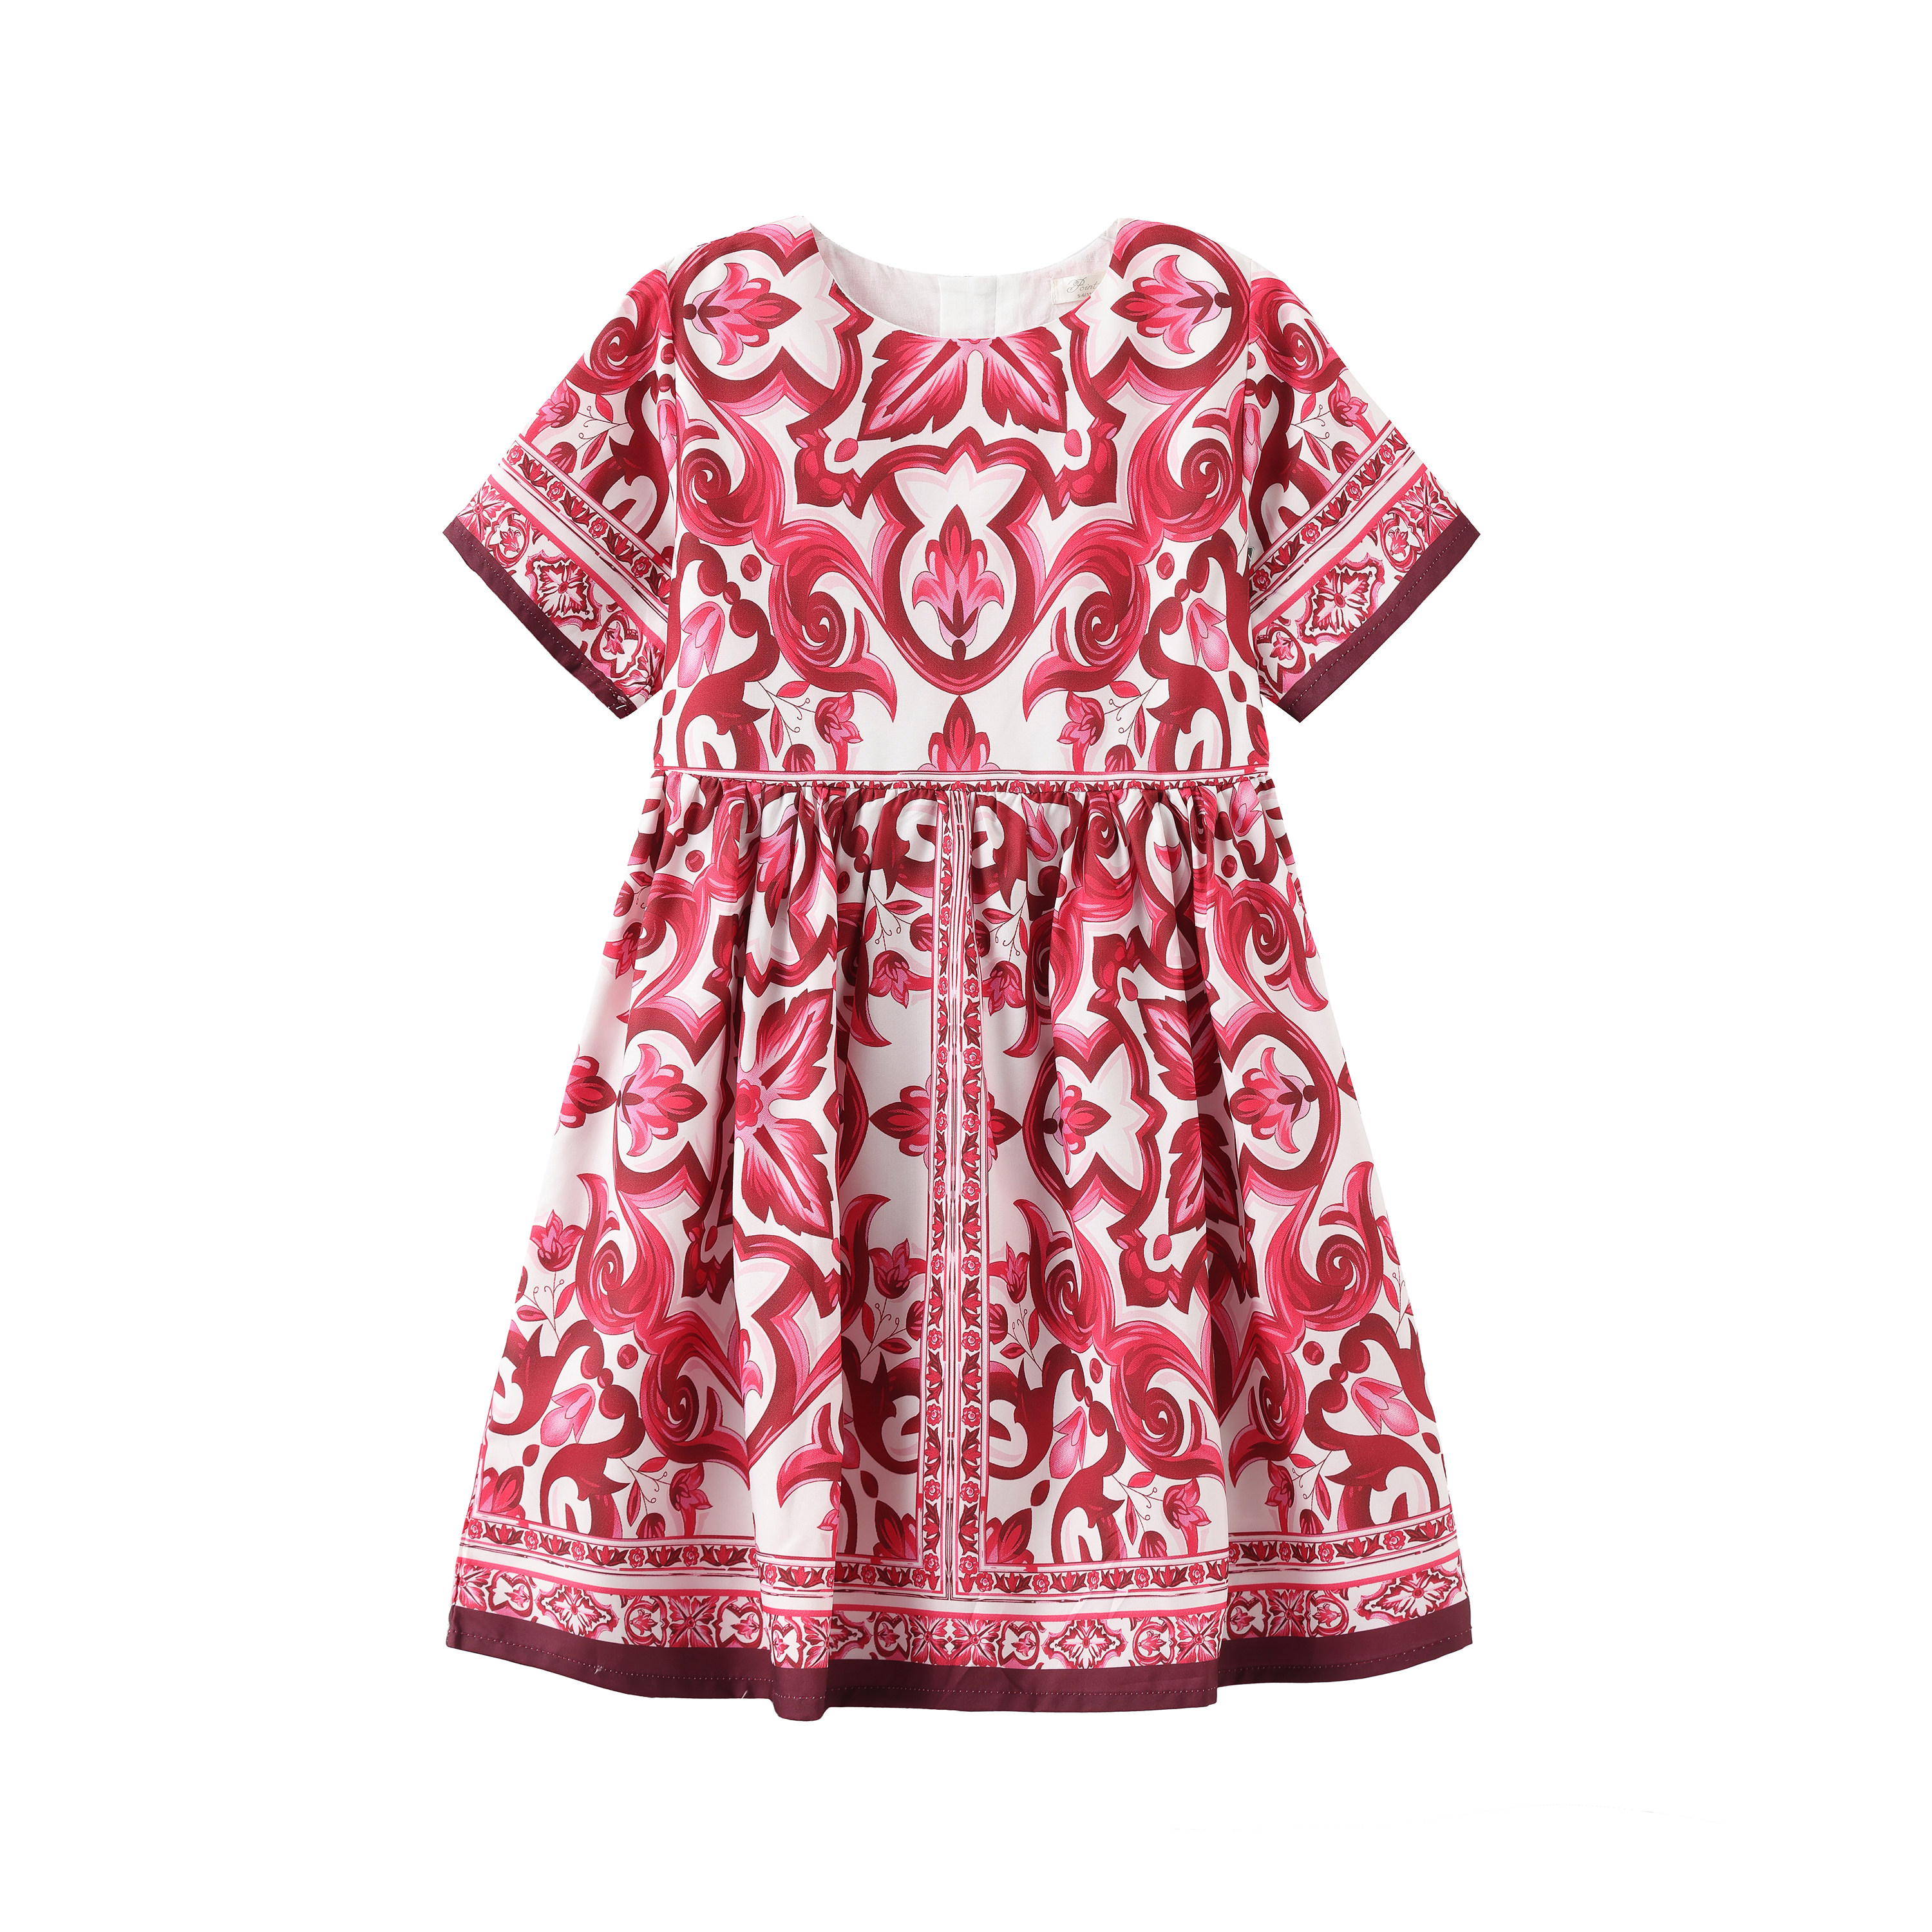 New design Dresses Children Clothing Princess Dress Summer Dress For Baby Girl